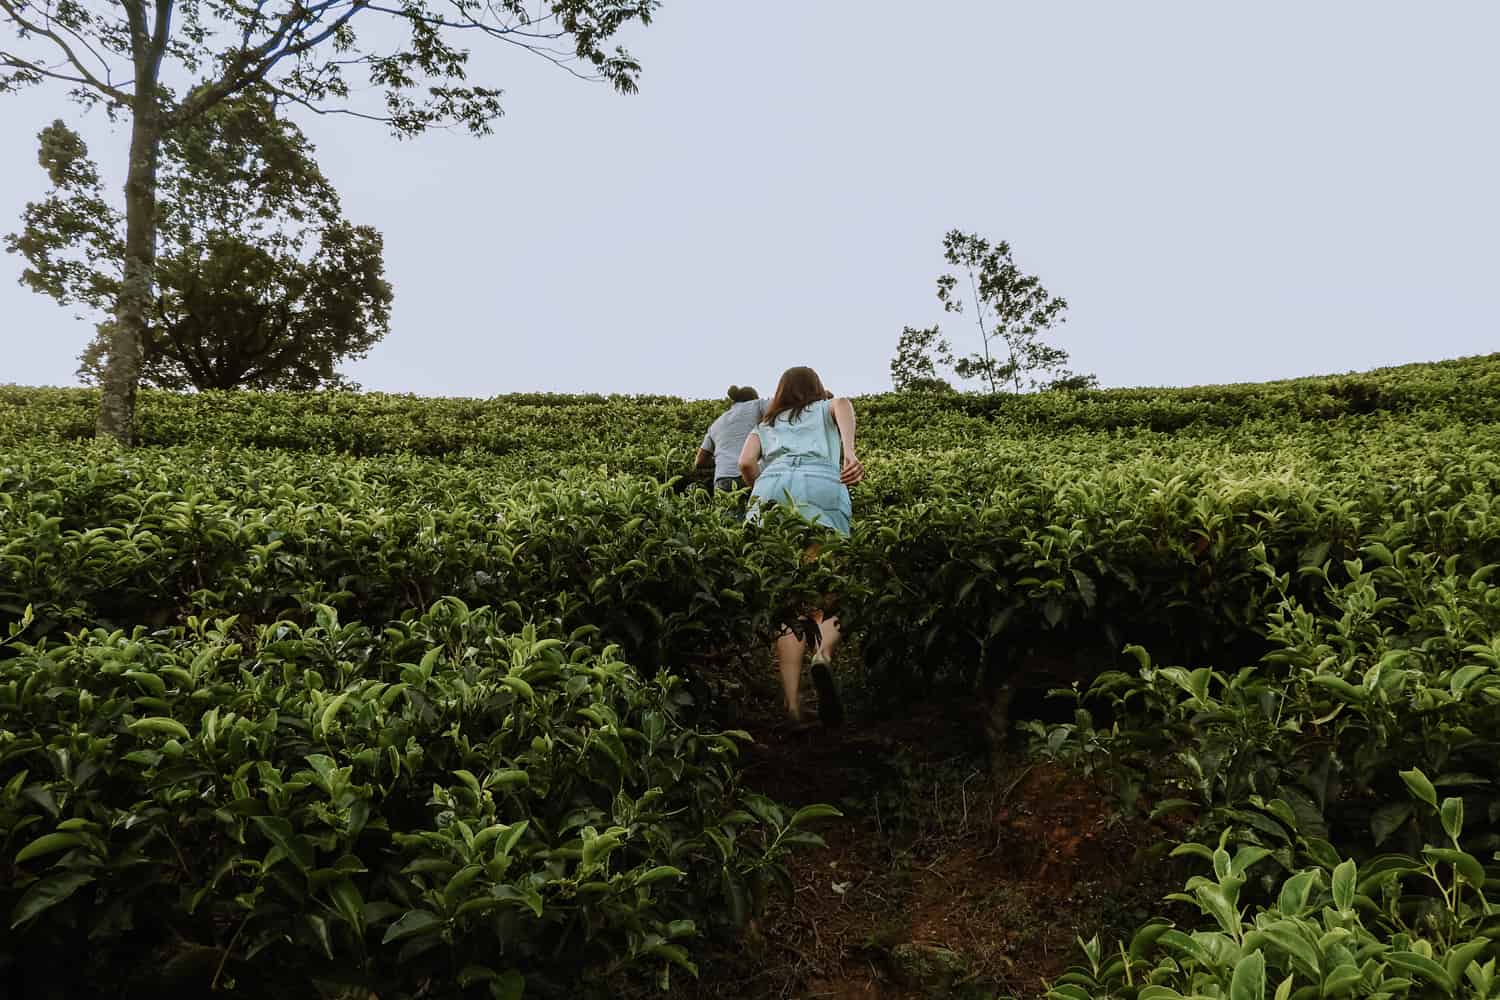 Nuwara Eliya tea plantation tours